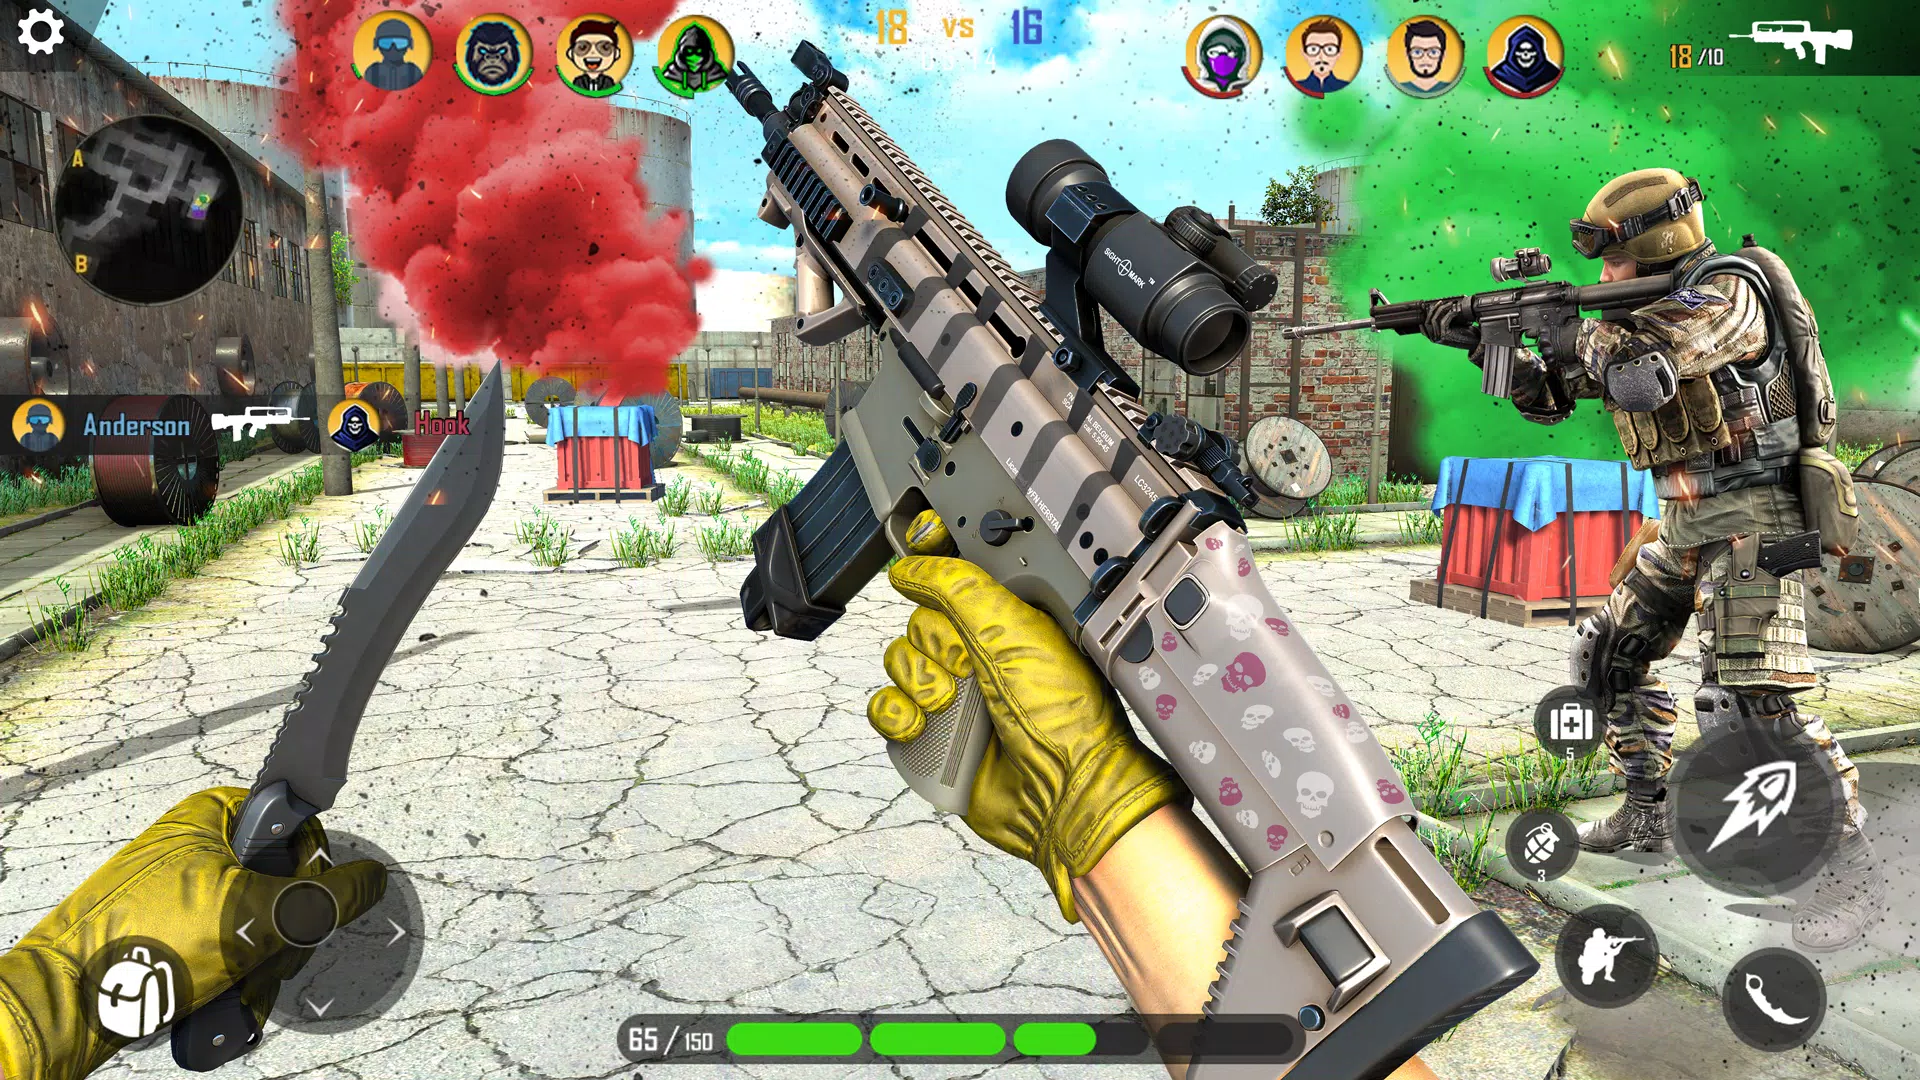 Download do APK de Pistola Jogos 3D offline para Android